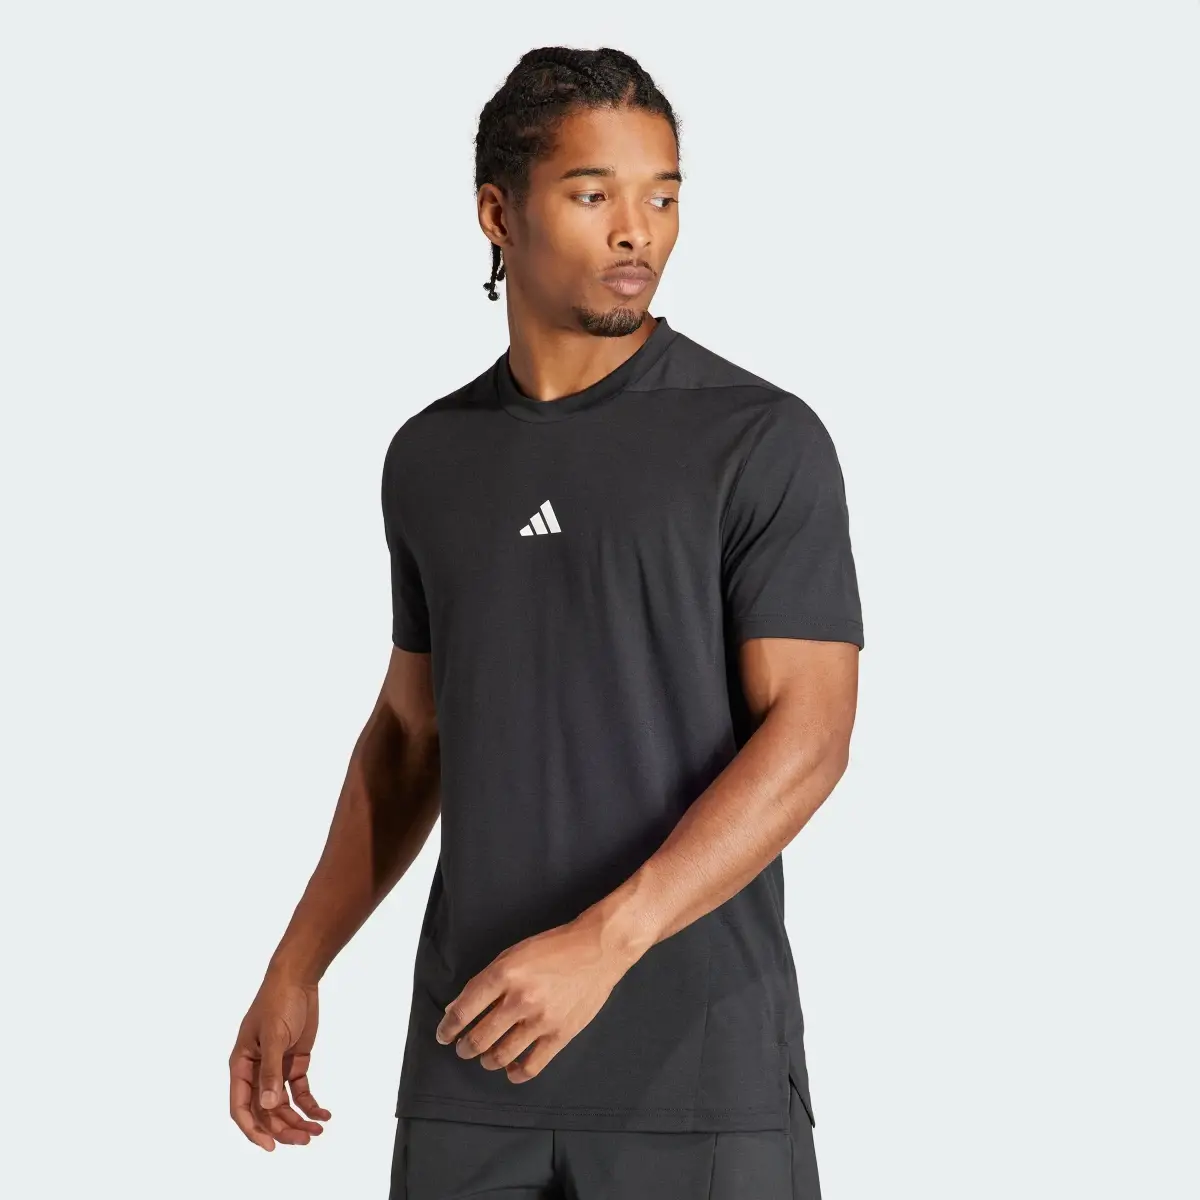 Adidas Camiseta Designed for Training Workout. 2